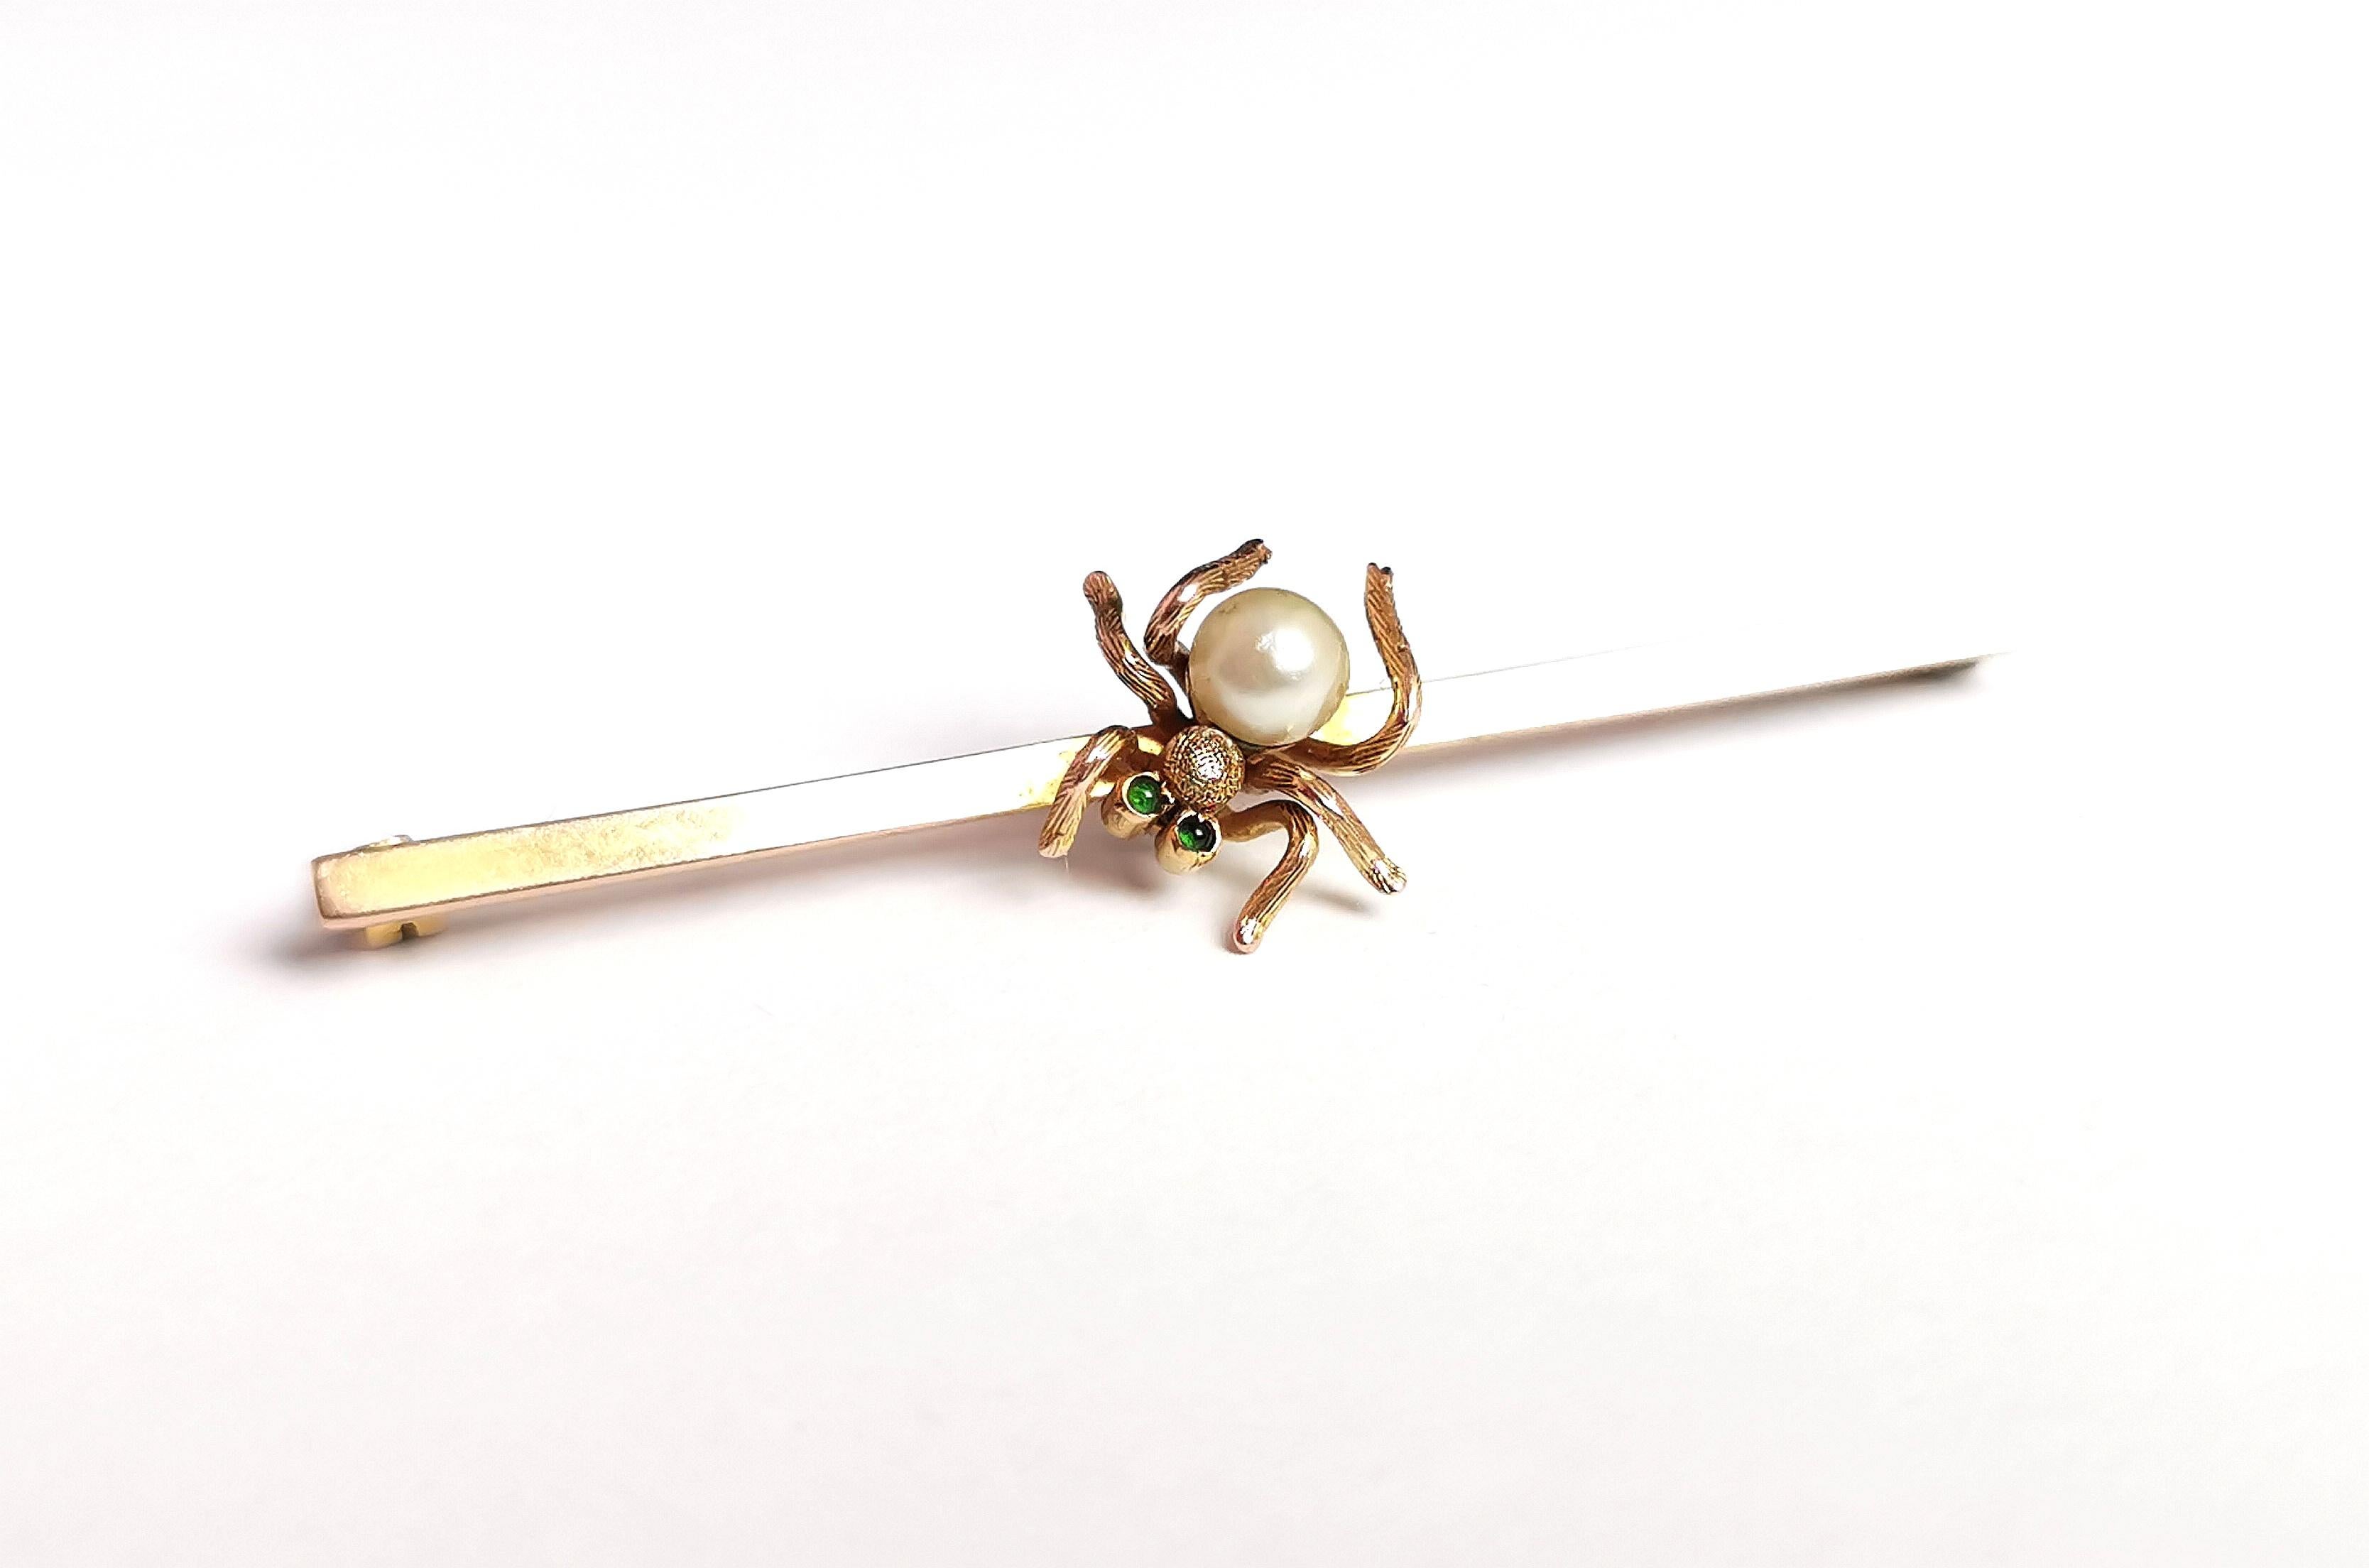 Antique 9k Gold Spider Brooch, Demantoid Garnet and Pearl, Edwardian For Sale 7